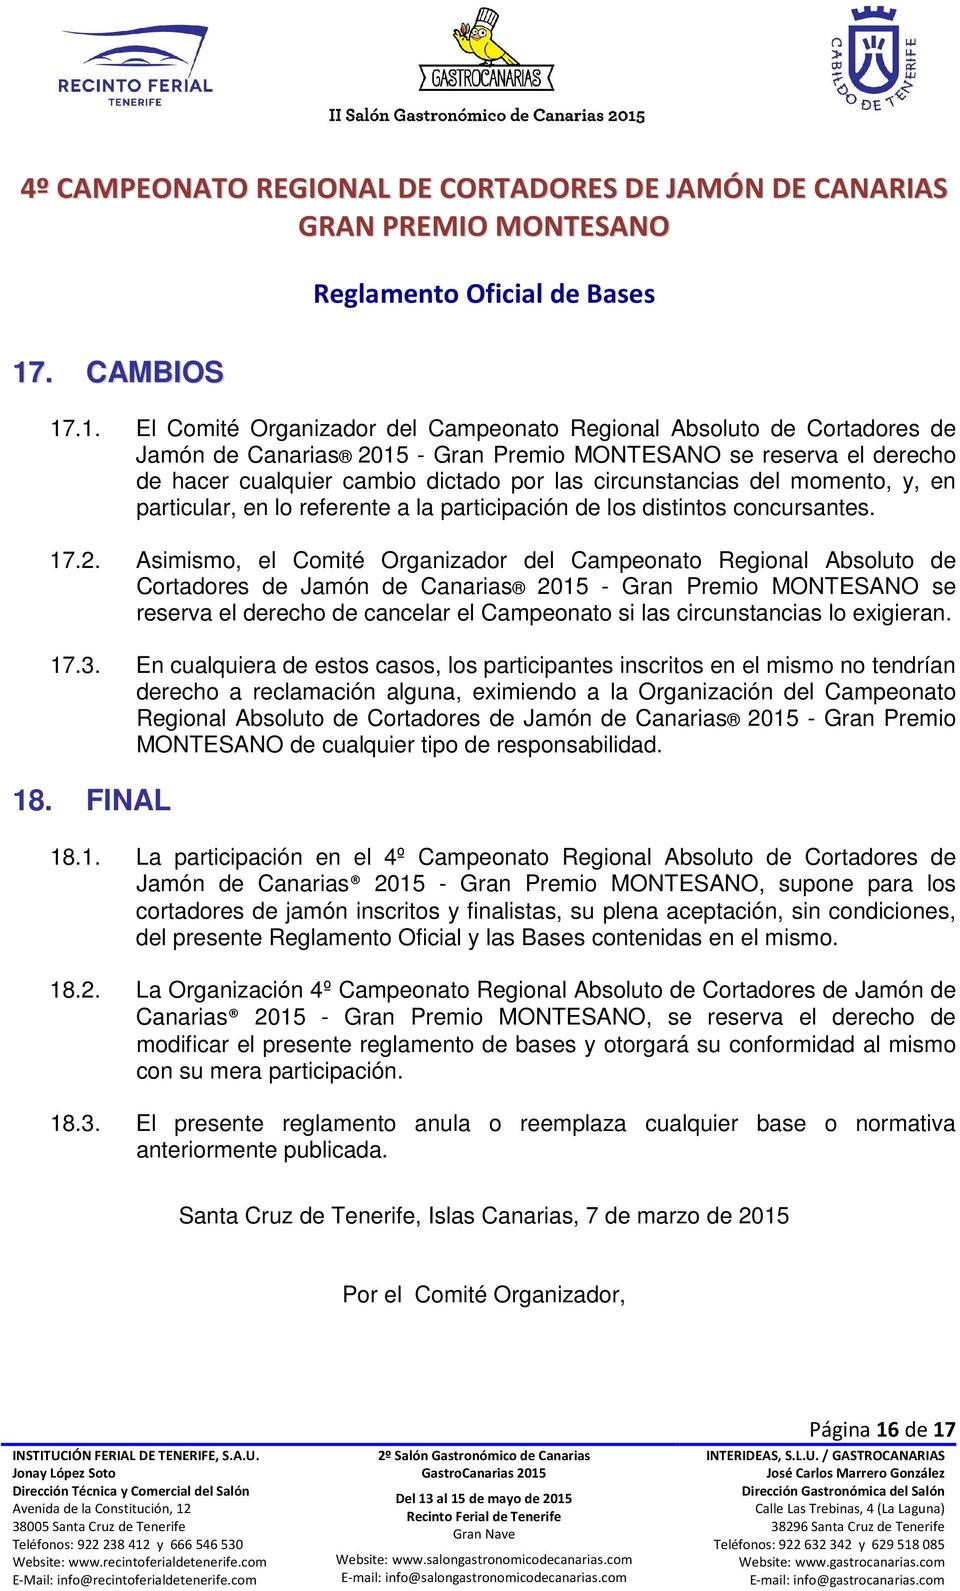 Asimismo, el Comité Organizador del Campeonato Regional Absoluto de Cortadores de Jamón de Canarias 2015 - Gran Premio MONTESANO se reserva el derecho de cancelar el Campeonato si las circunstancias